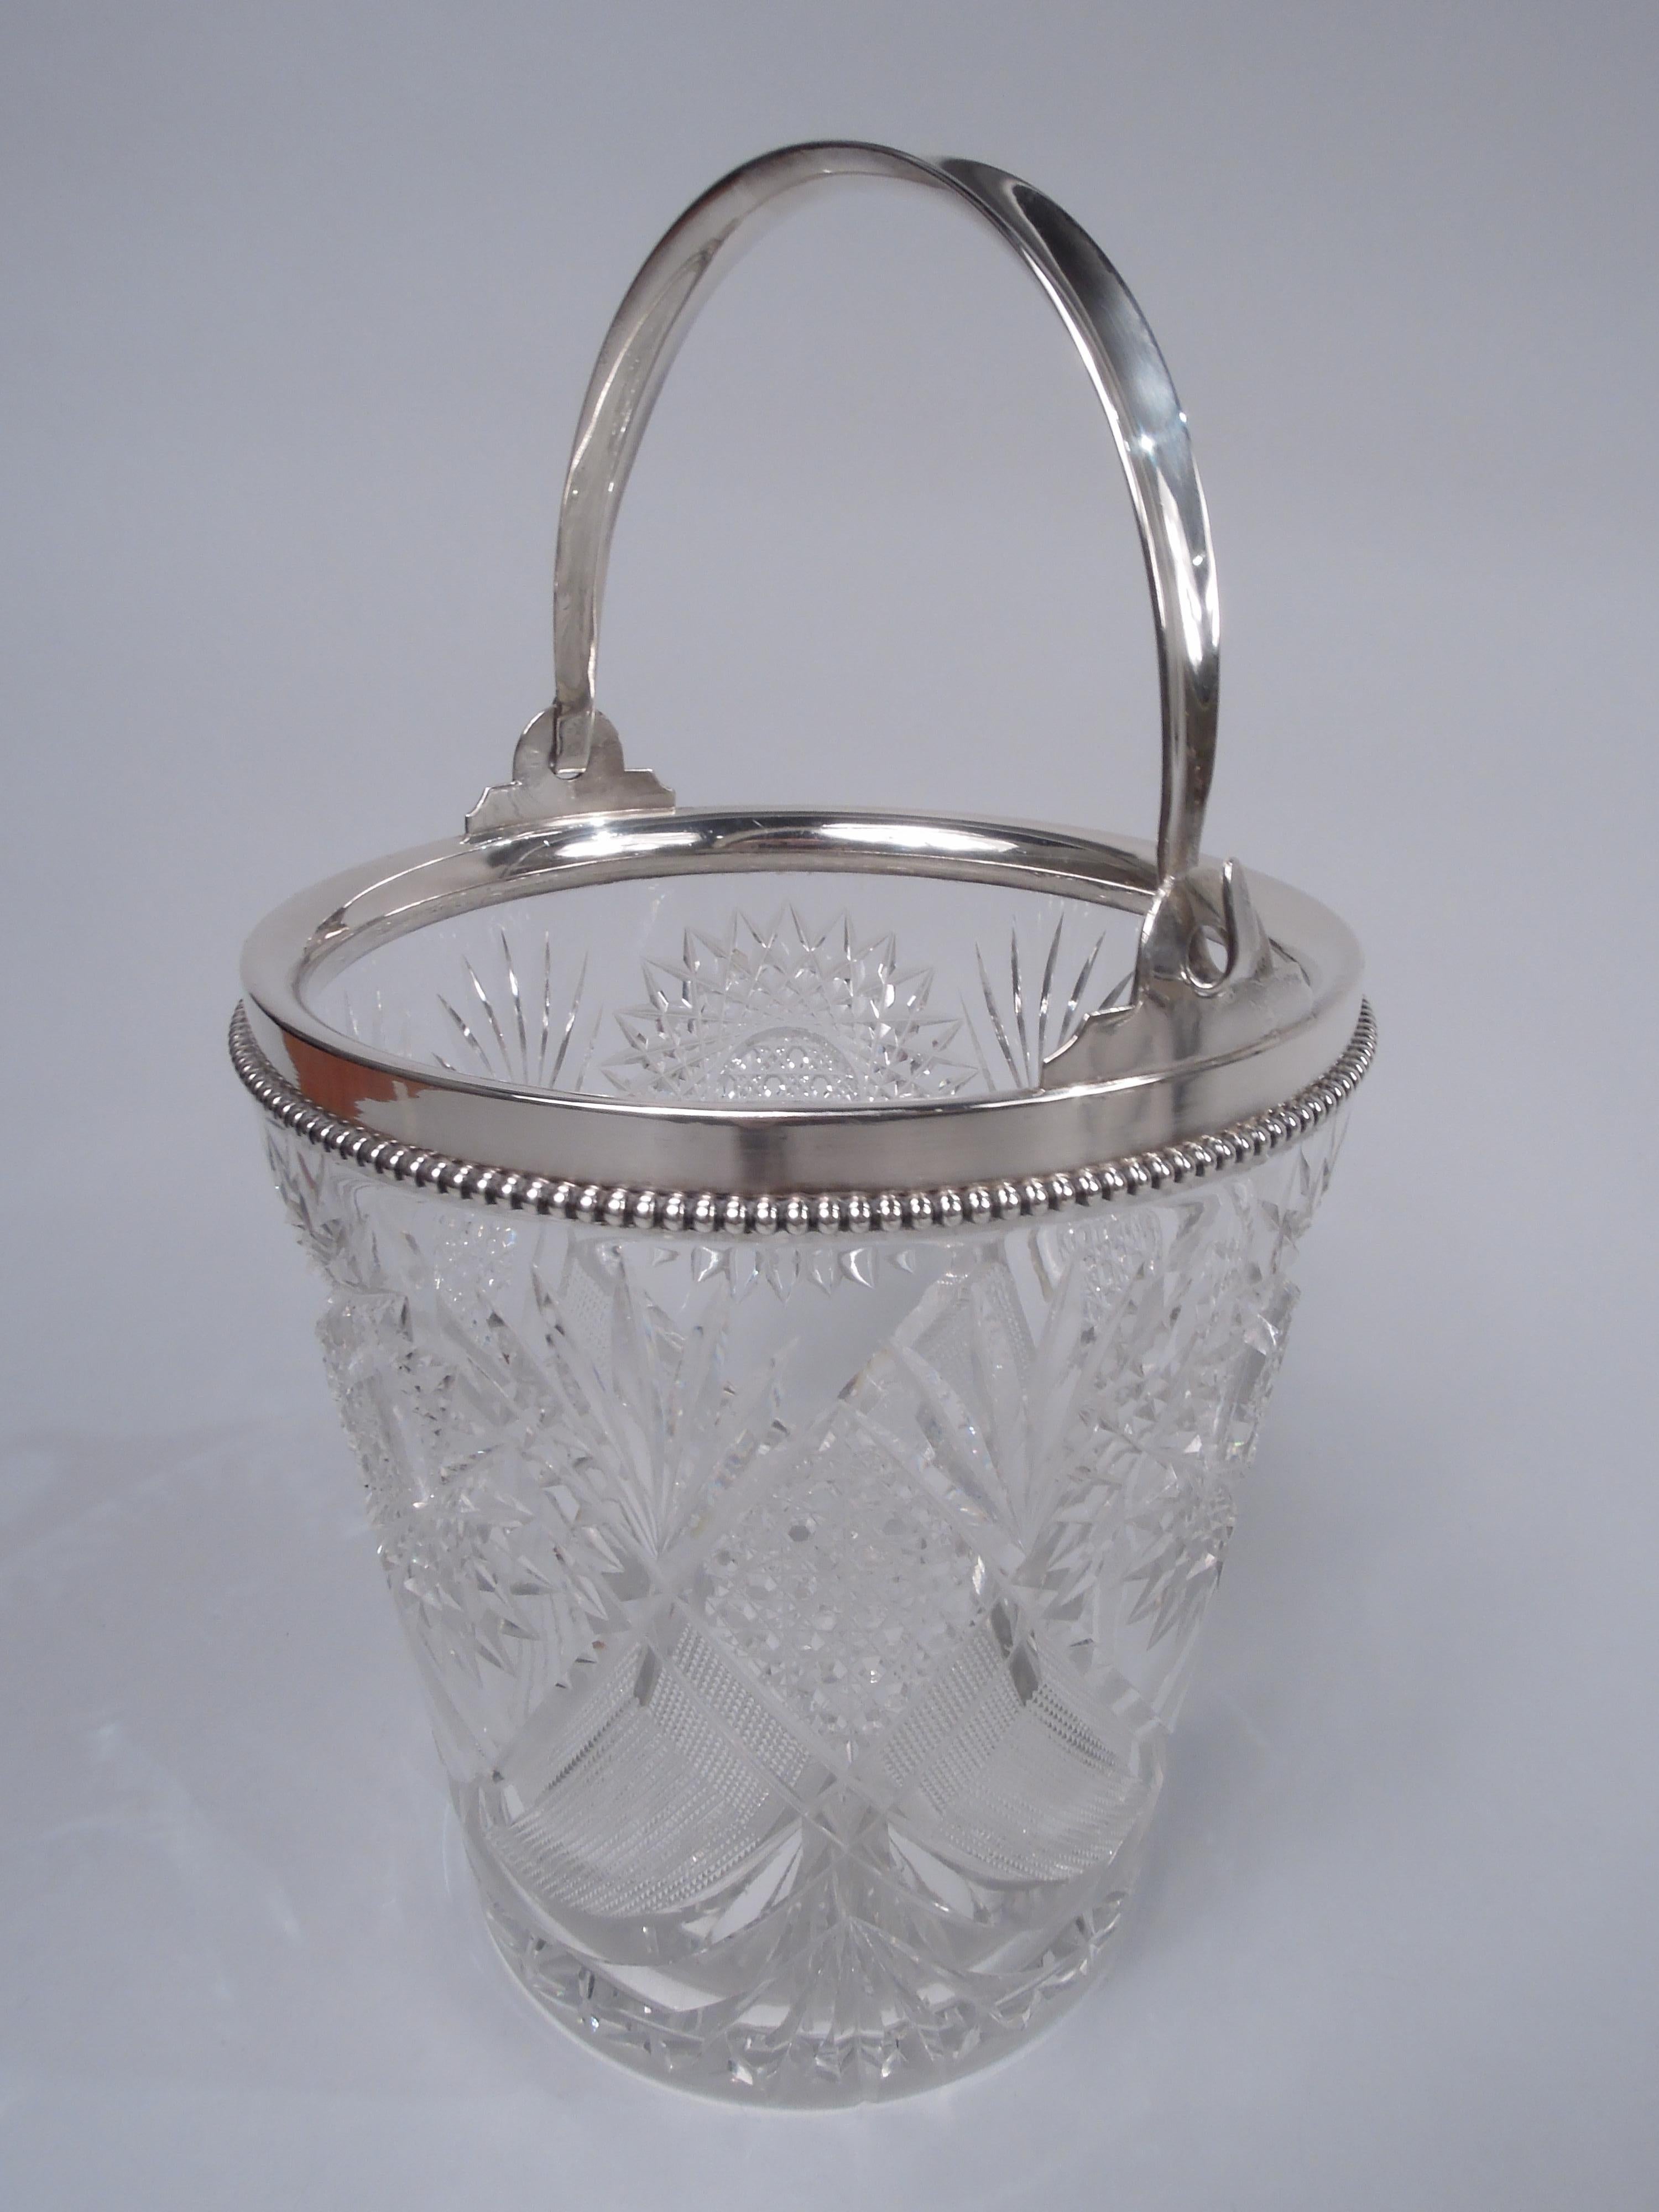 Viktorianischer Eiskübel aus Brillantglas mit Beschlägen aus Sterlingsilber. Hergestellt von Wilcox (Teil von International) in Meriden, Conn. um 1900. Spitz zulaufende Seiten mit Windel- und Sternverzierung. Die Mündung hat einen